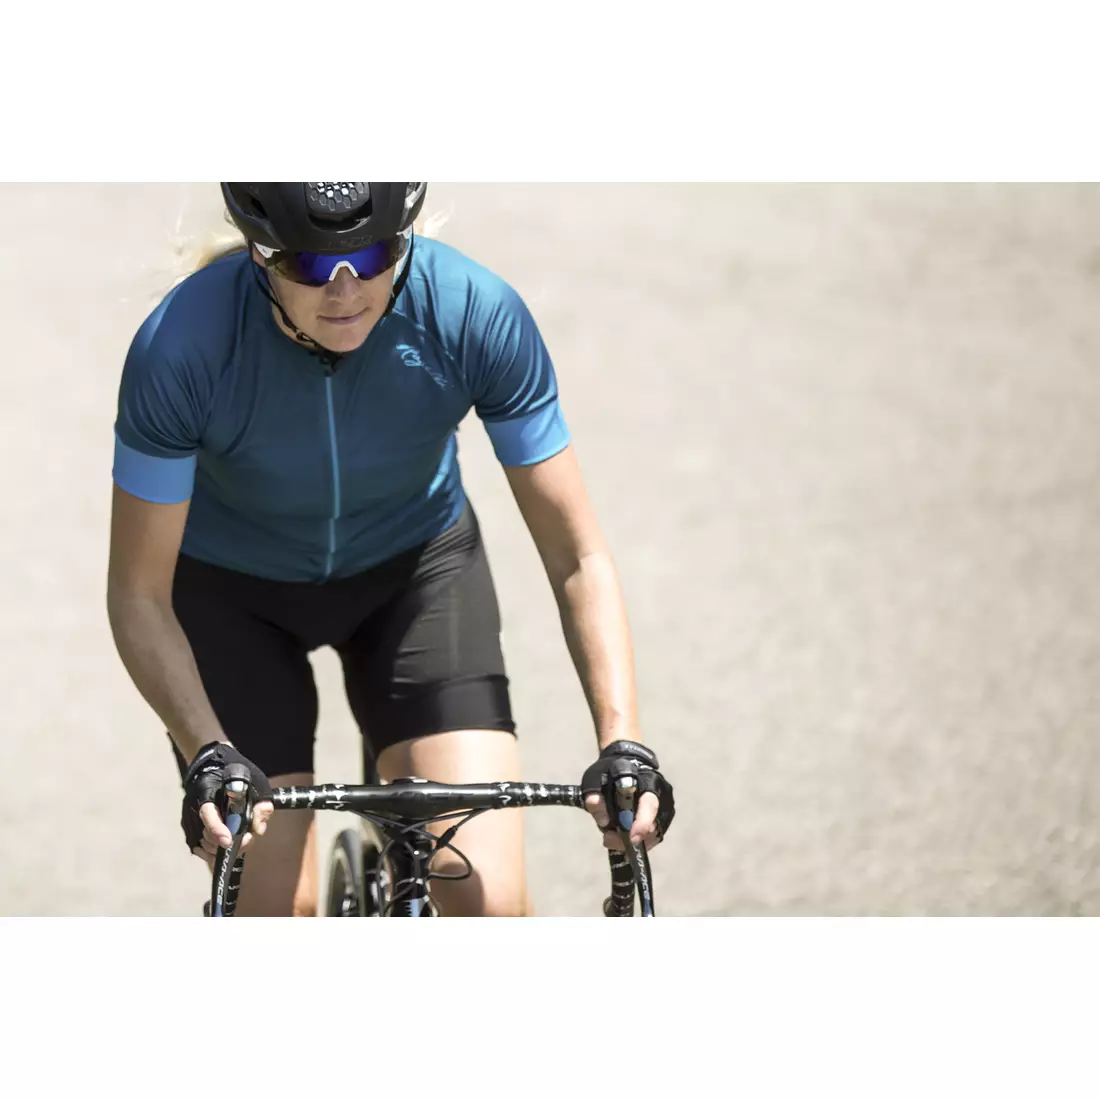 Rogelli MODESTA damska koszulka rowerowa, niebieska